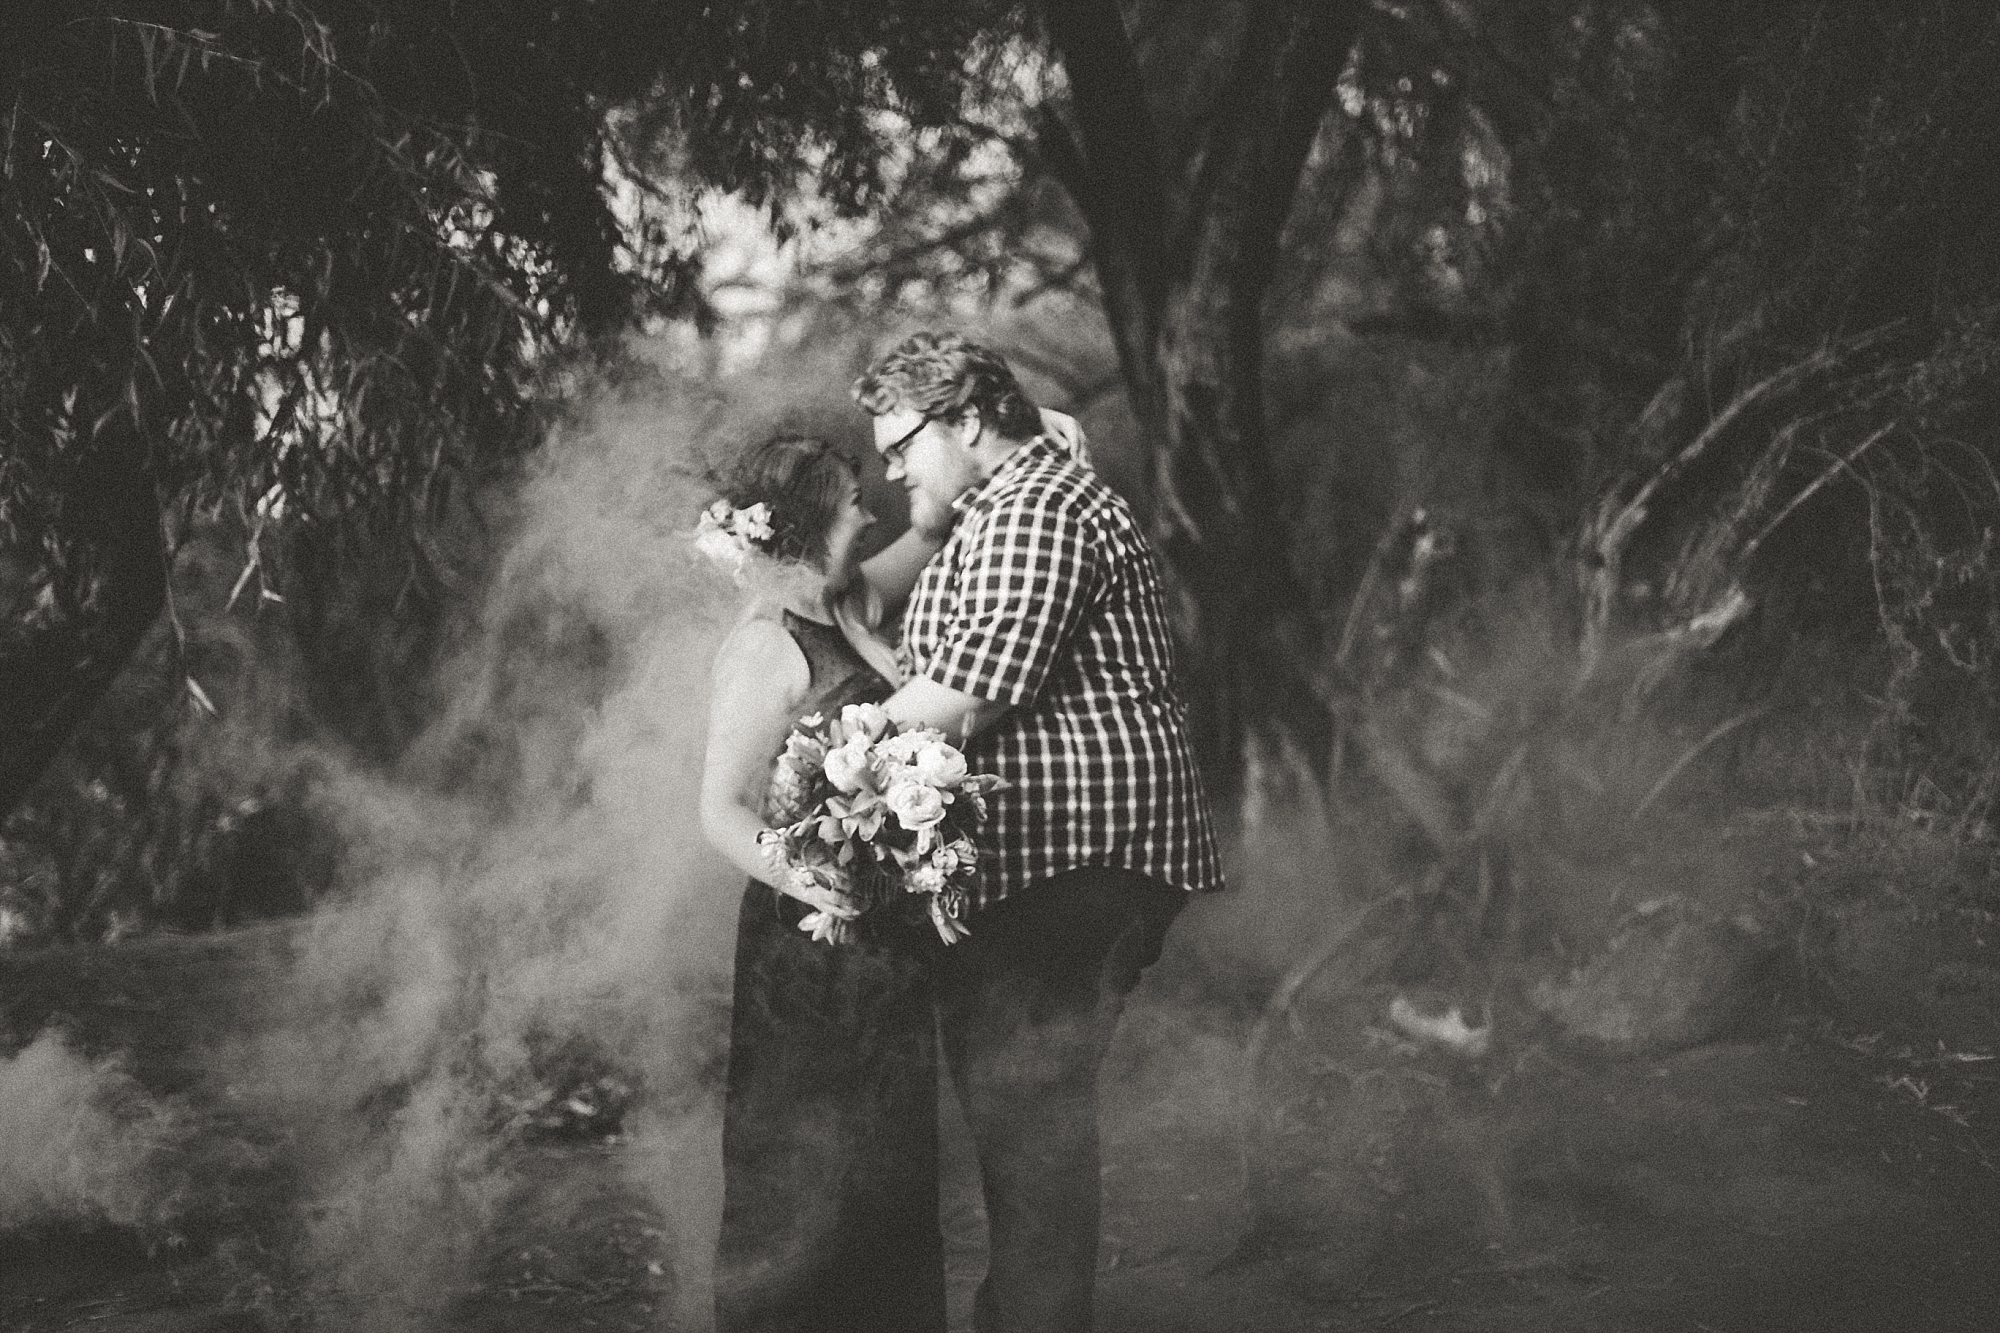 Salt River Couples' Session bouquet flower crown engagement photos mesa az black and white smoke bomb